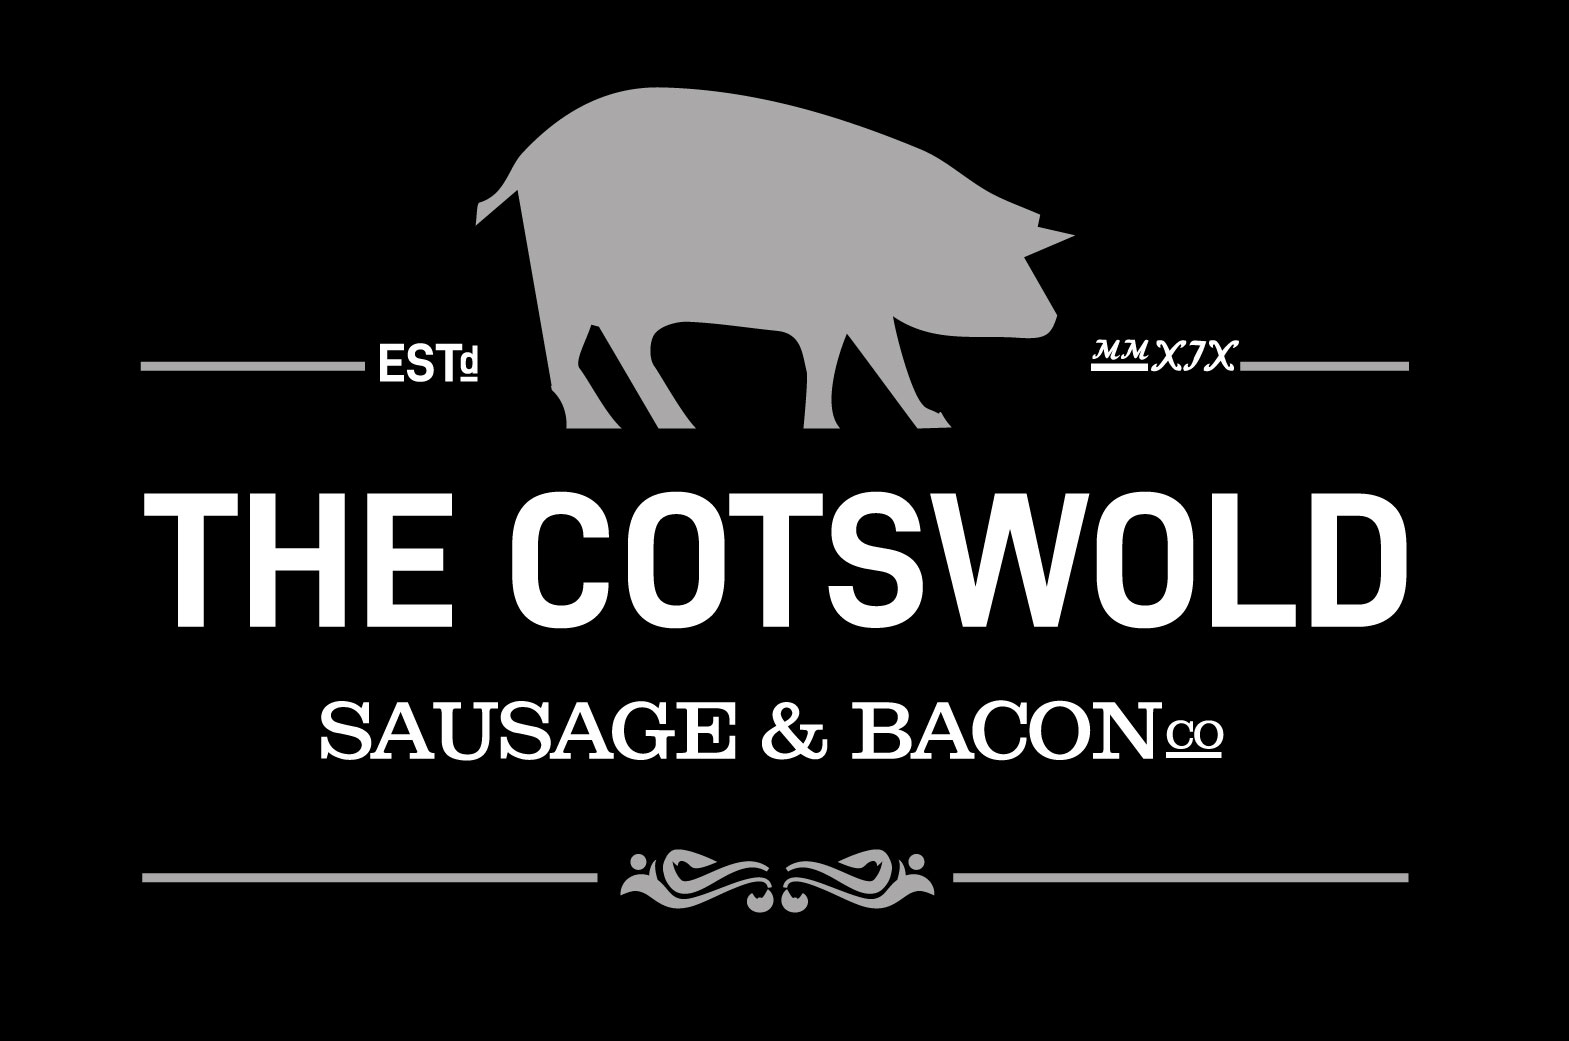 Cotswold Sausage & Bacon Co Ltd